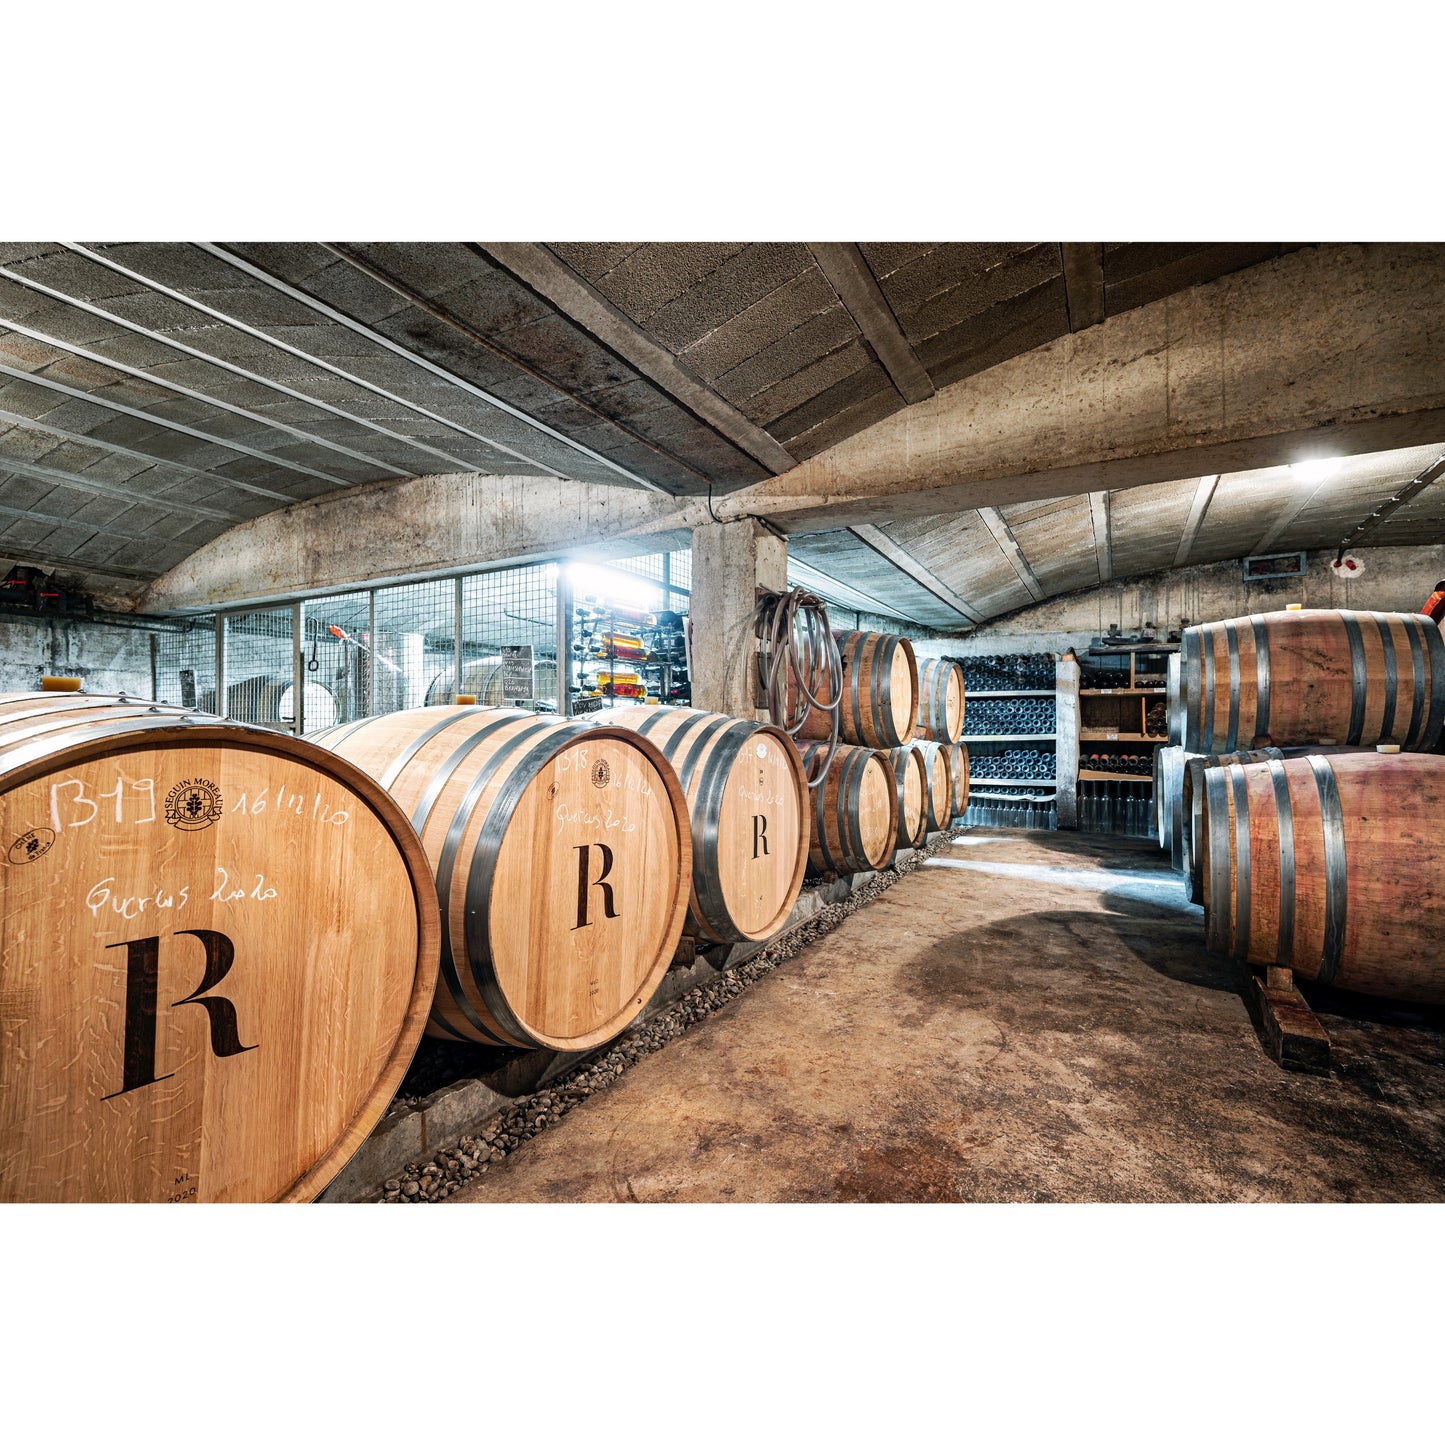 6 bouteilles de vin 75cl IGP Vaucluse Rouge "Les Oliviers" 2019